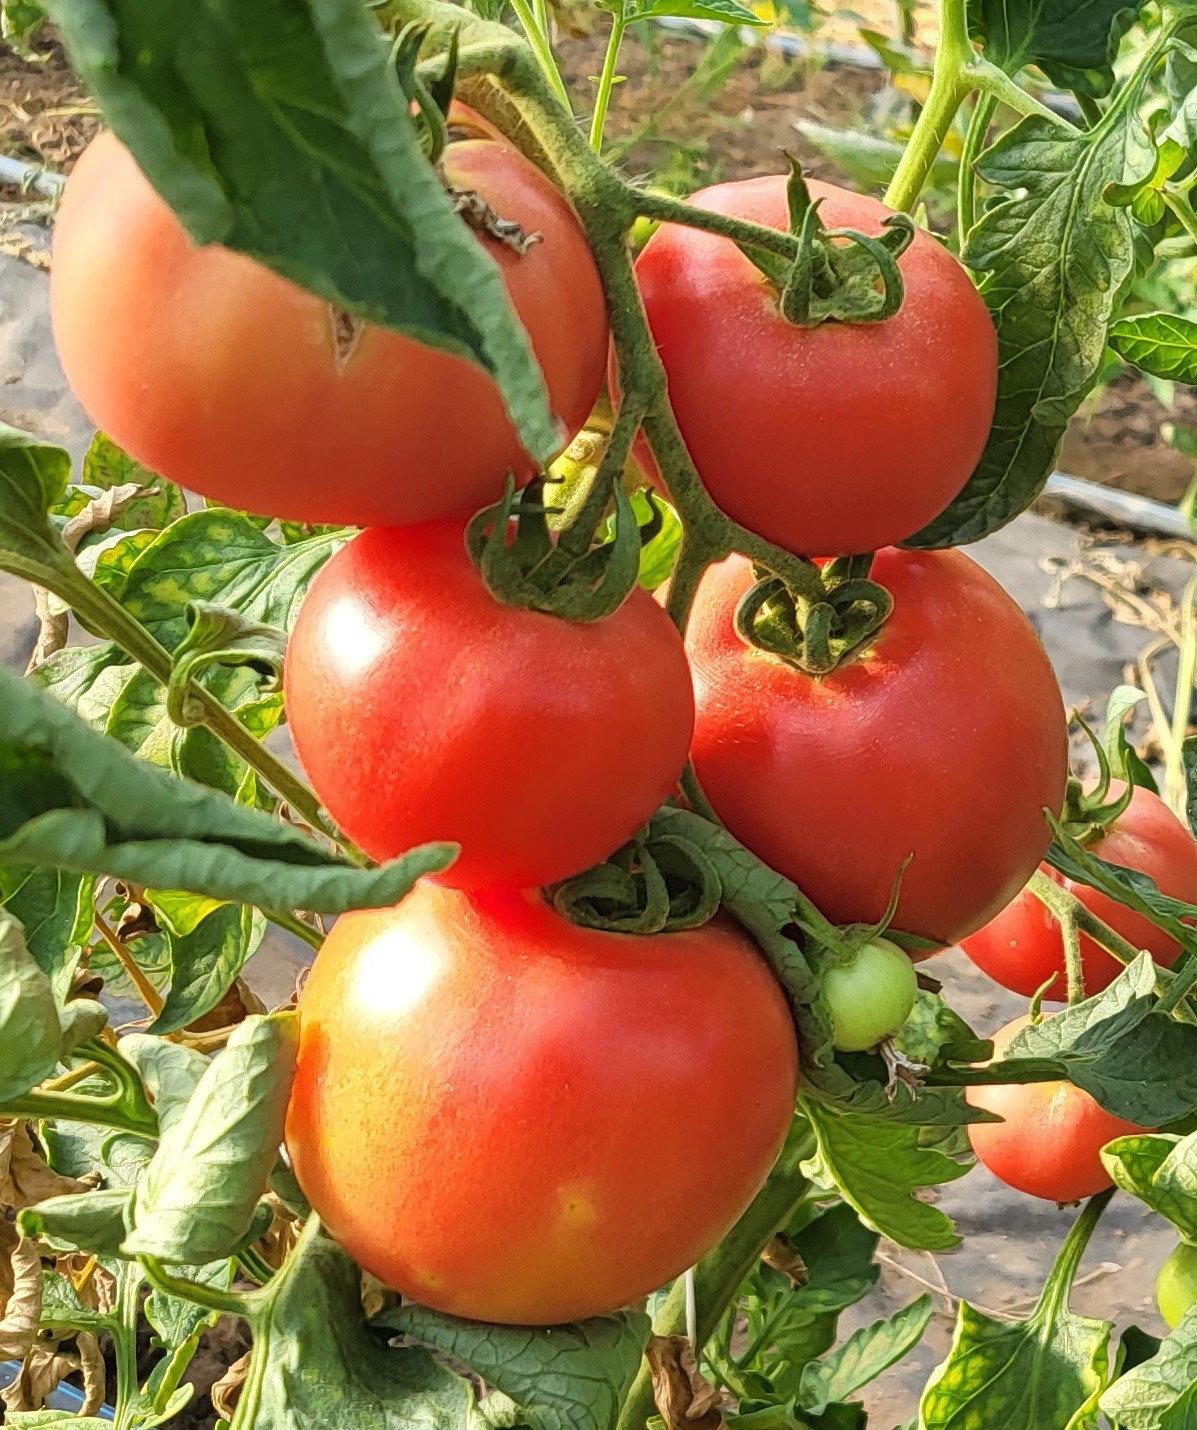 Avietinių ir "jautinių" pomidorų sultys